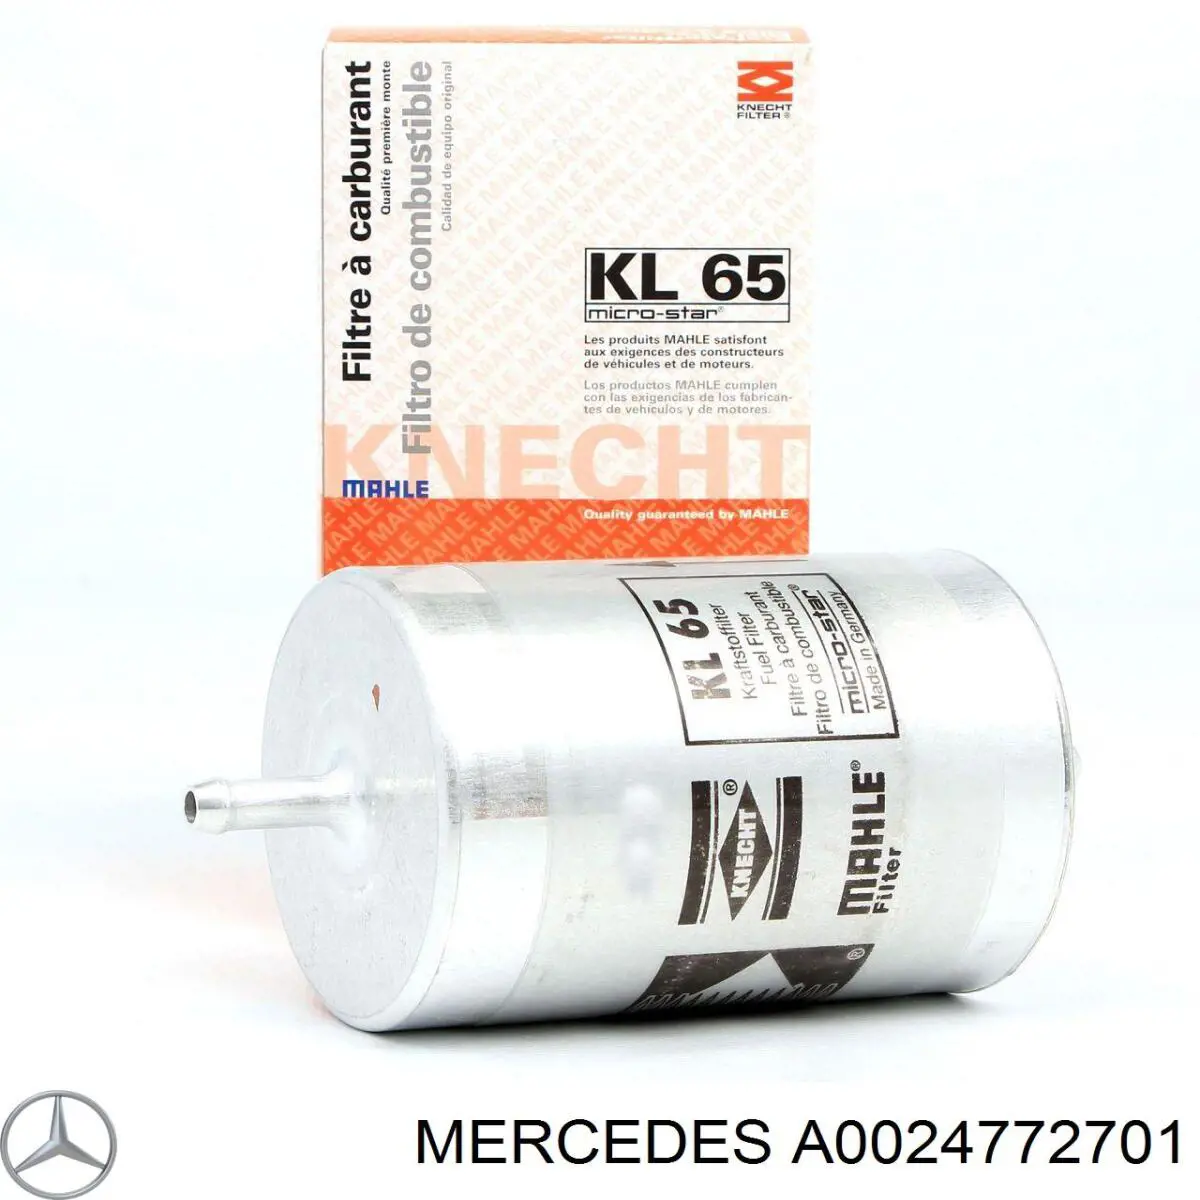 A0024772701 Mercedes filtro combustible